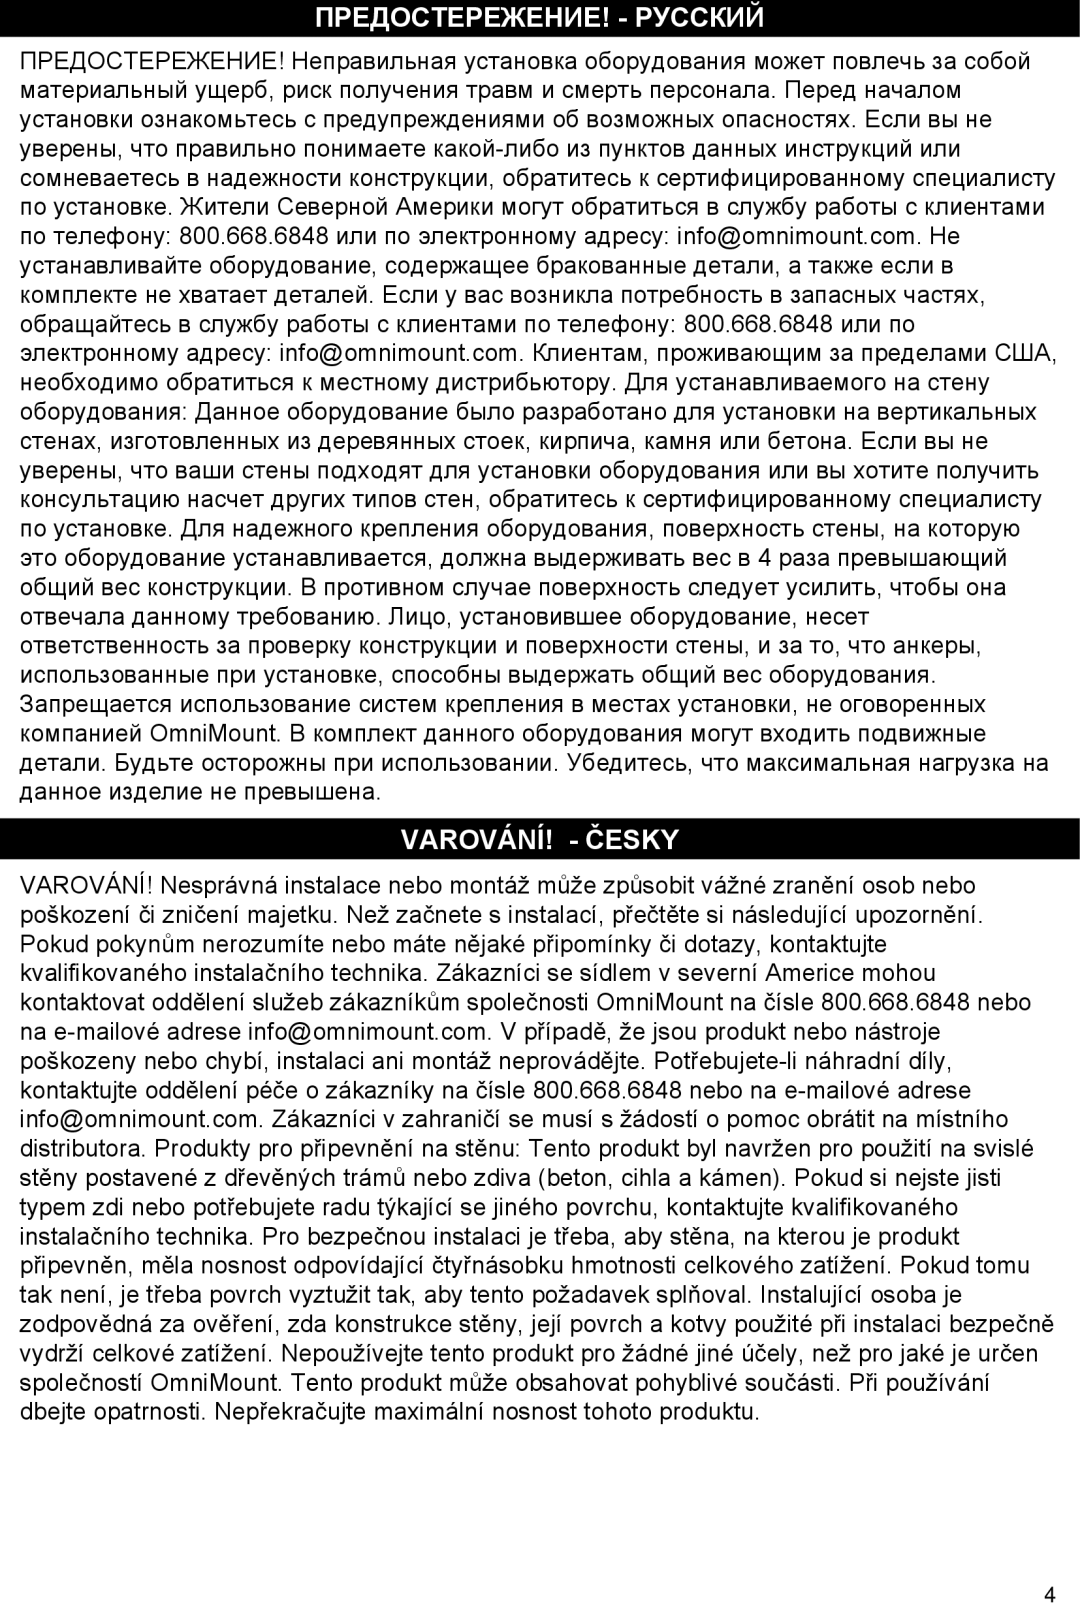 Omnimount Gemini 1 instruction manual Предостережение! - Русский, Varování! - Česky 